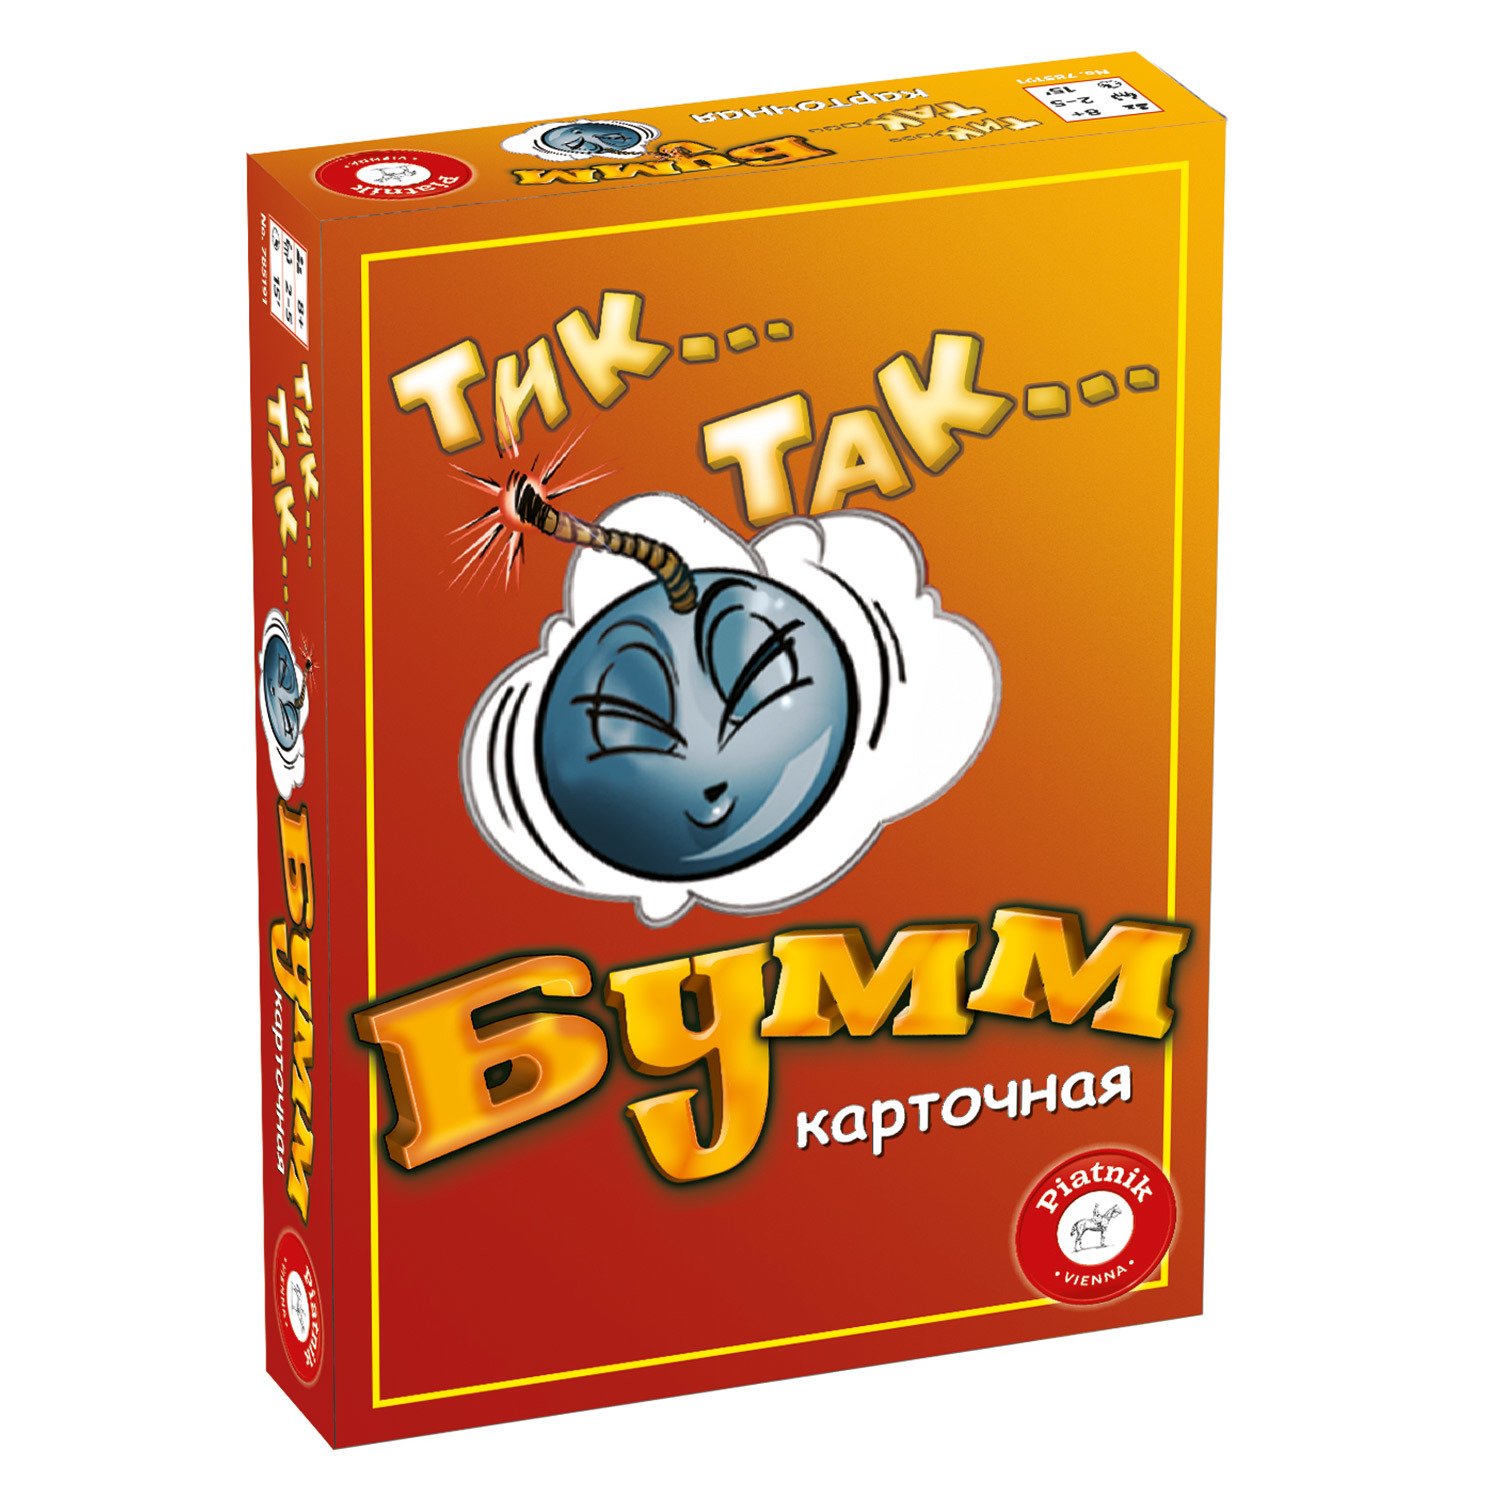 Игра настольная Piatnik Тик-так бумм карточная версия 785191